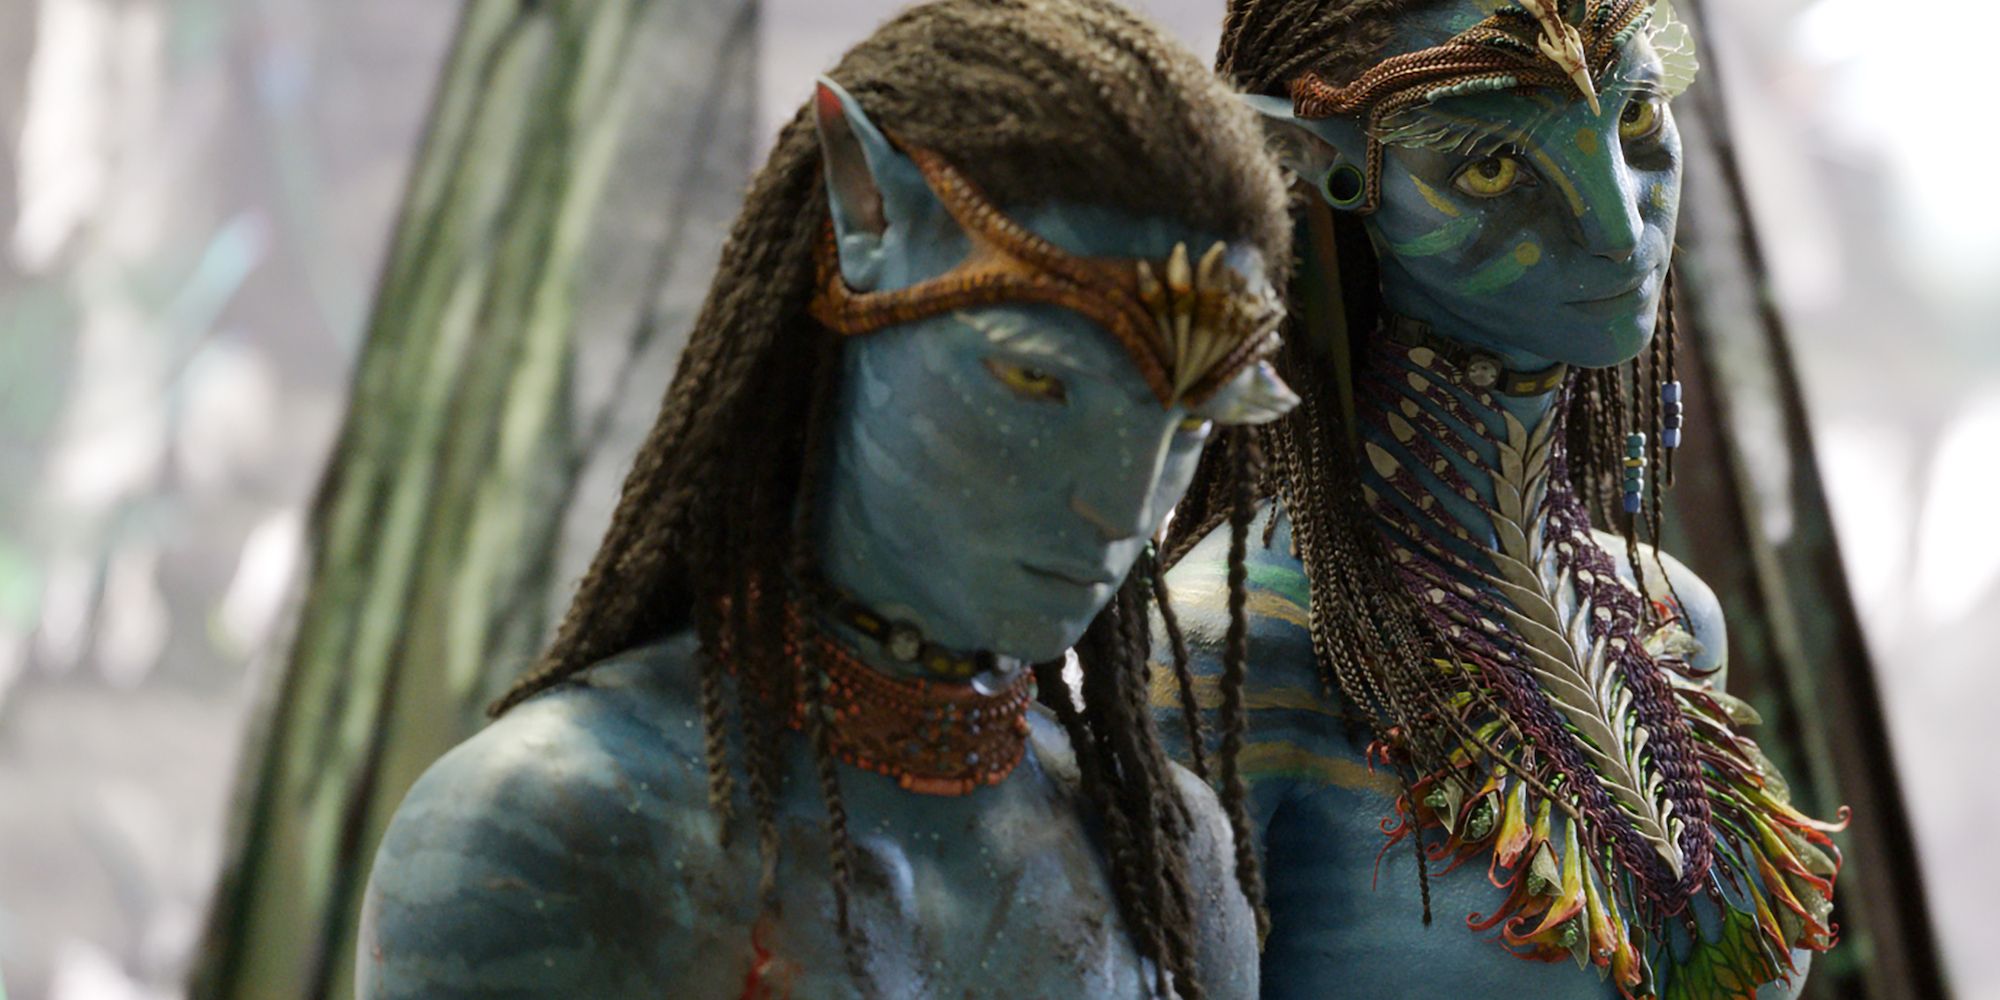 Jamie Menyanjung sebagai Neyetam di Avatar: The Way of Water